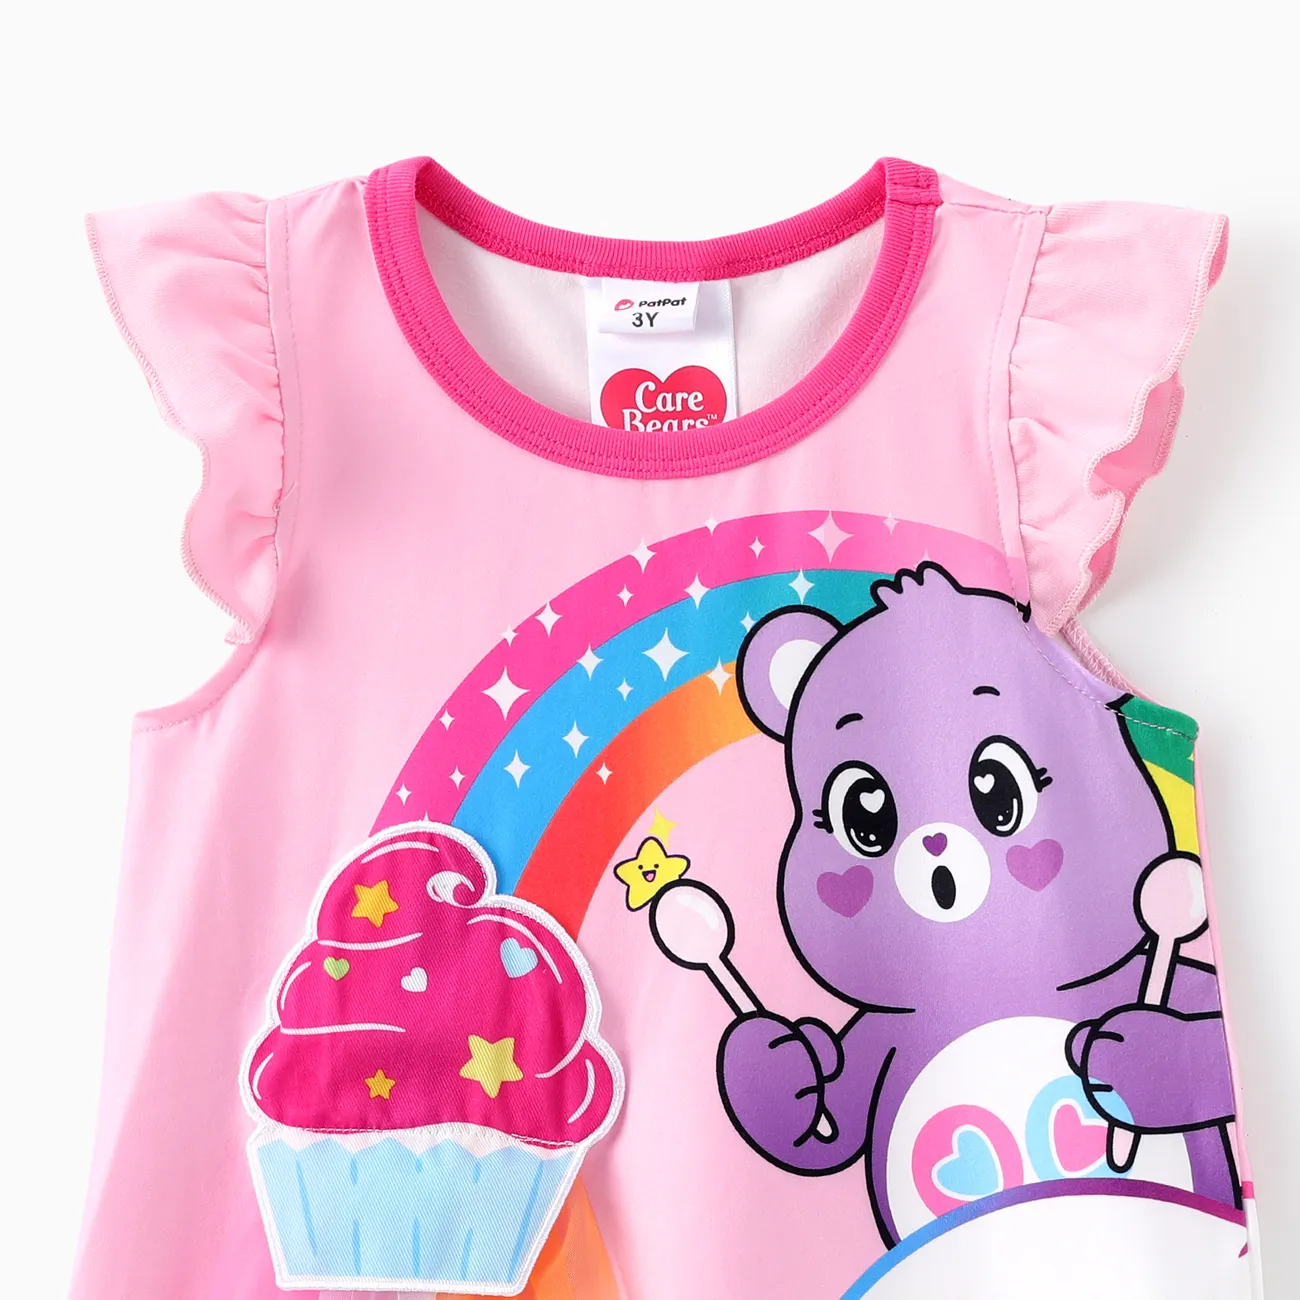 Gli Orsetti del Cuore Bambino piccolo Ragazza Ipertattile Infantile Vestiti Rosa big image 1